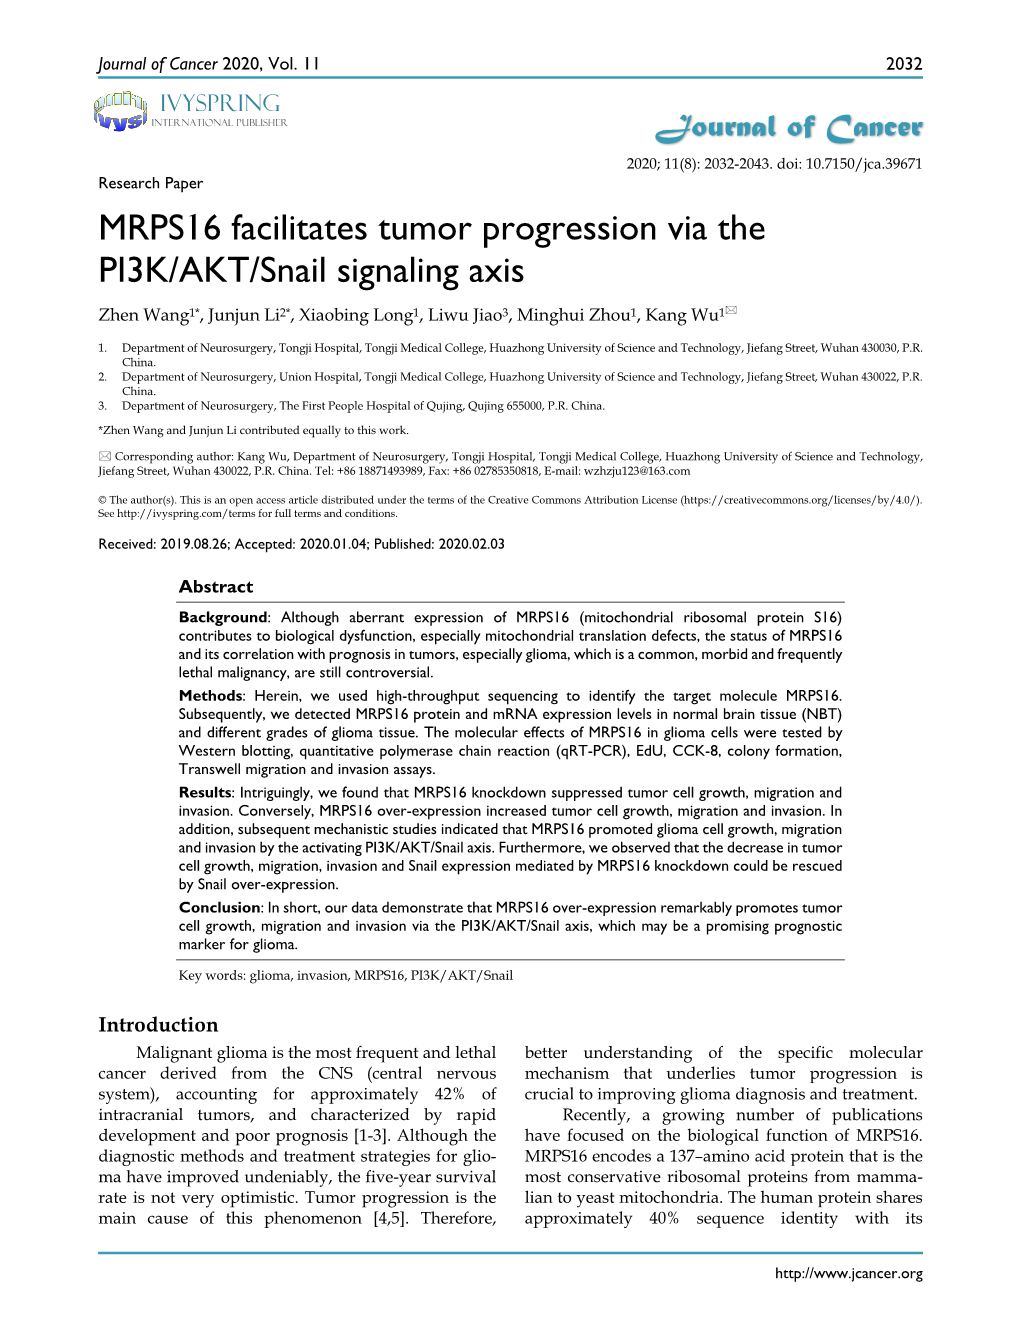 MRPS16 Facilitates Tumor Progression Via the PI3K/AKT/Snail Signaling Axis Zhen Wang1*, Junjun Li2*, Xiaobing Long1, Liwu Jiao3, Minghui Zhou1, Kang Wu1